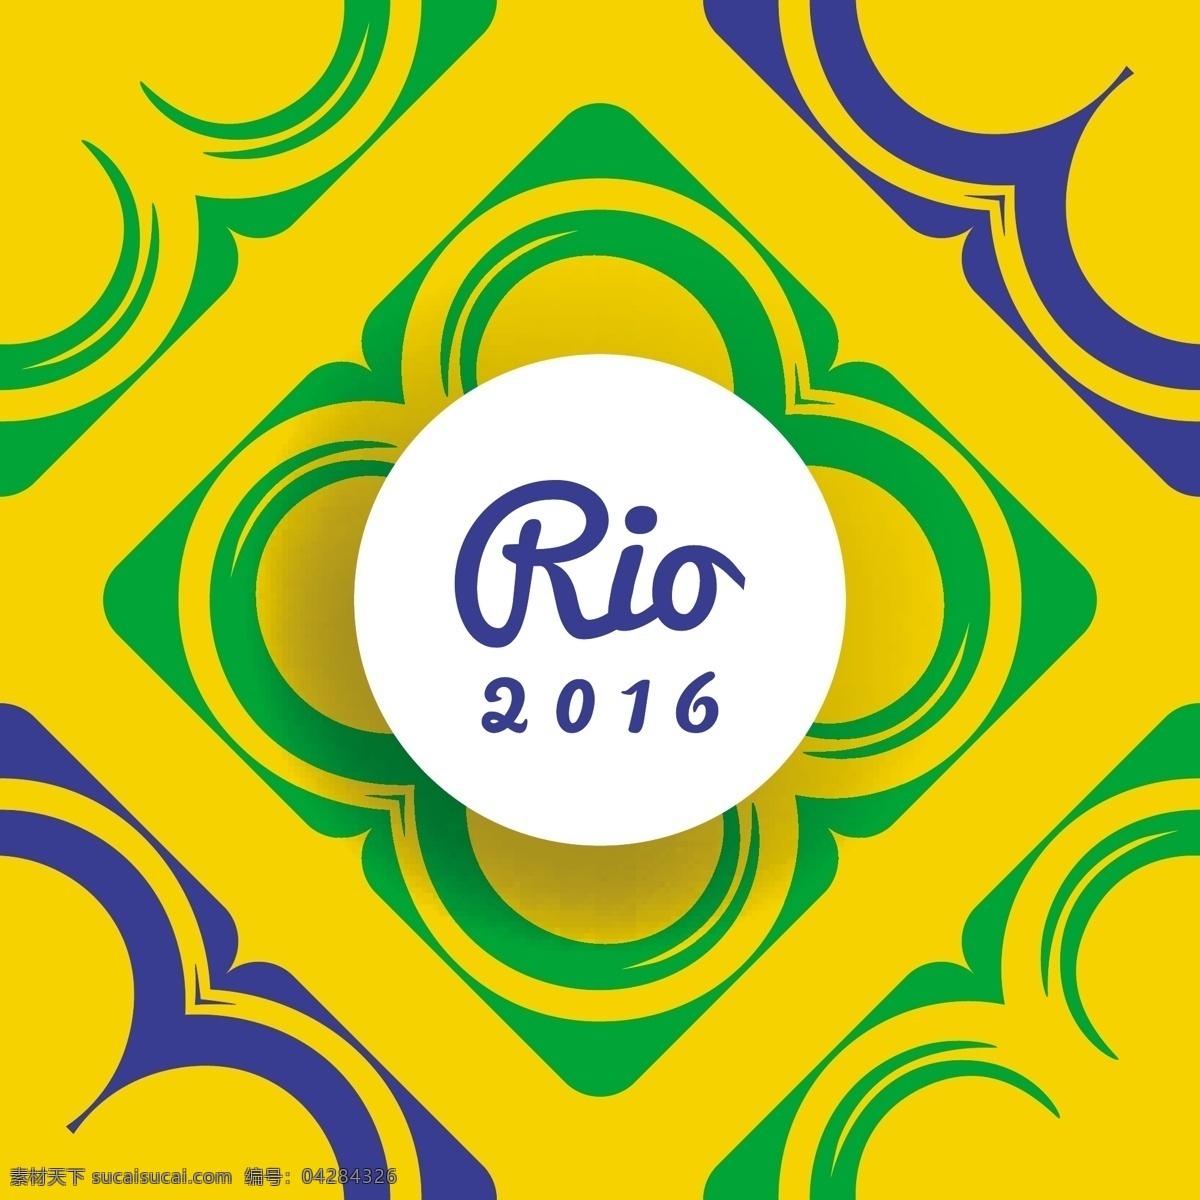 黄色 巴西 背景 抽象 形状 矢量图 奥运会 体育健身 简洁背景 事件七彩 2016 运动训练 背景比赛 巴西奥运会 里约热内卢